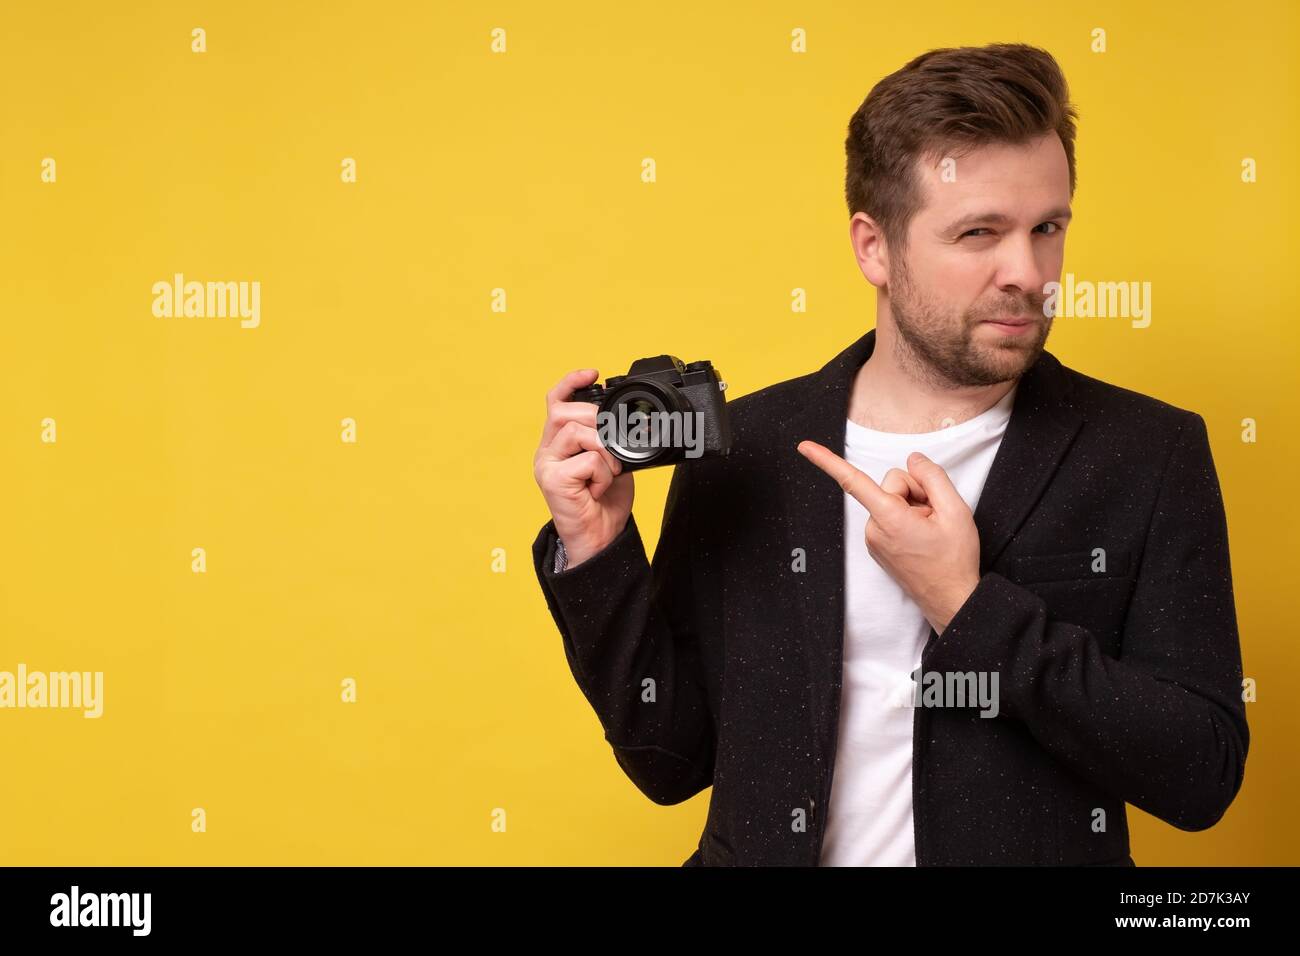 Reisender und Fotograf. Studio Porträt von schönen jungen Mann hält Fotokamera Aufnahme. Gelber schwarzer Boden. Stockfoto